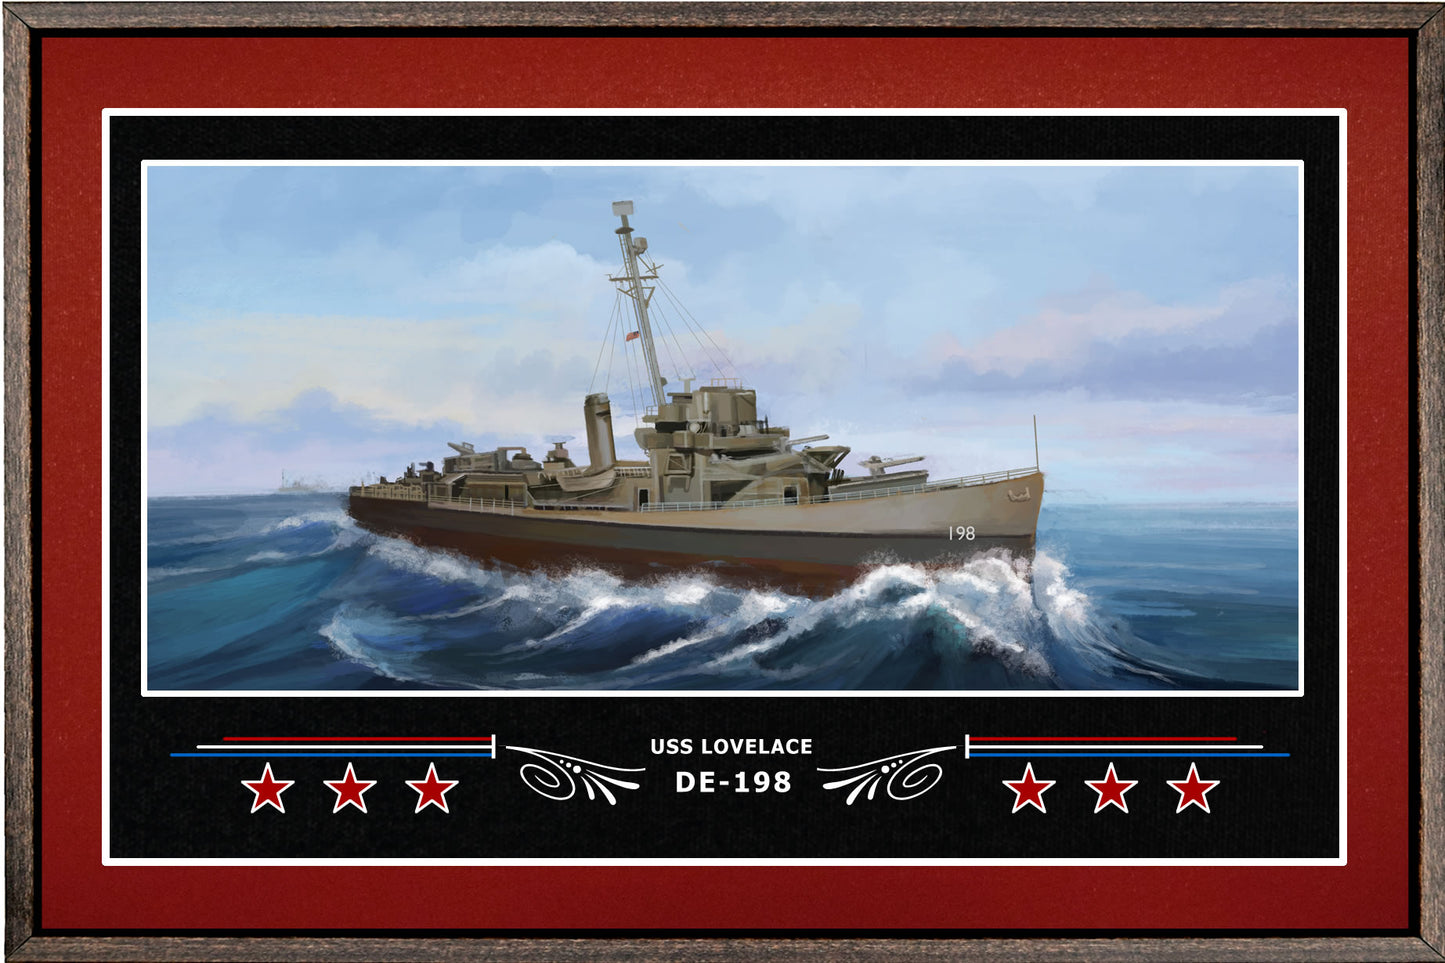 USS LOVELACE DE 198 BOX FRAMED CANVAS ART BURGUNDY